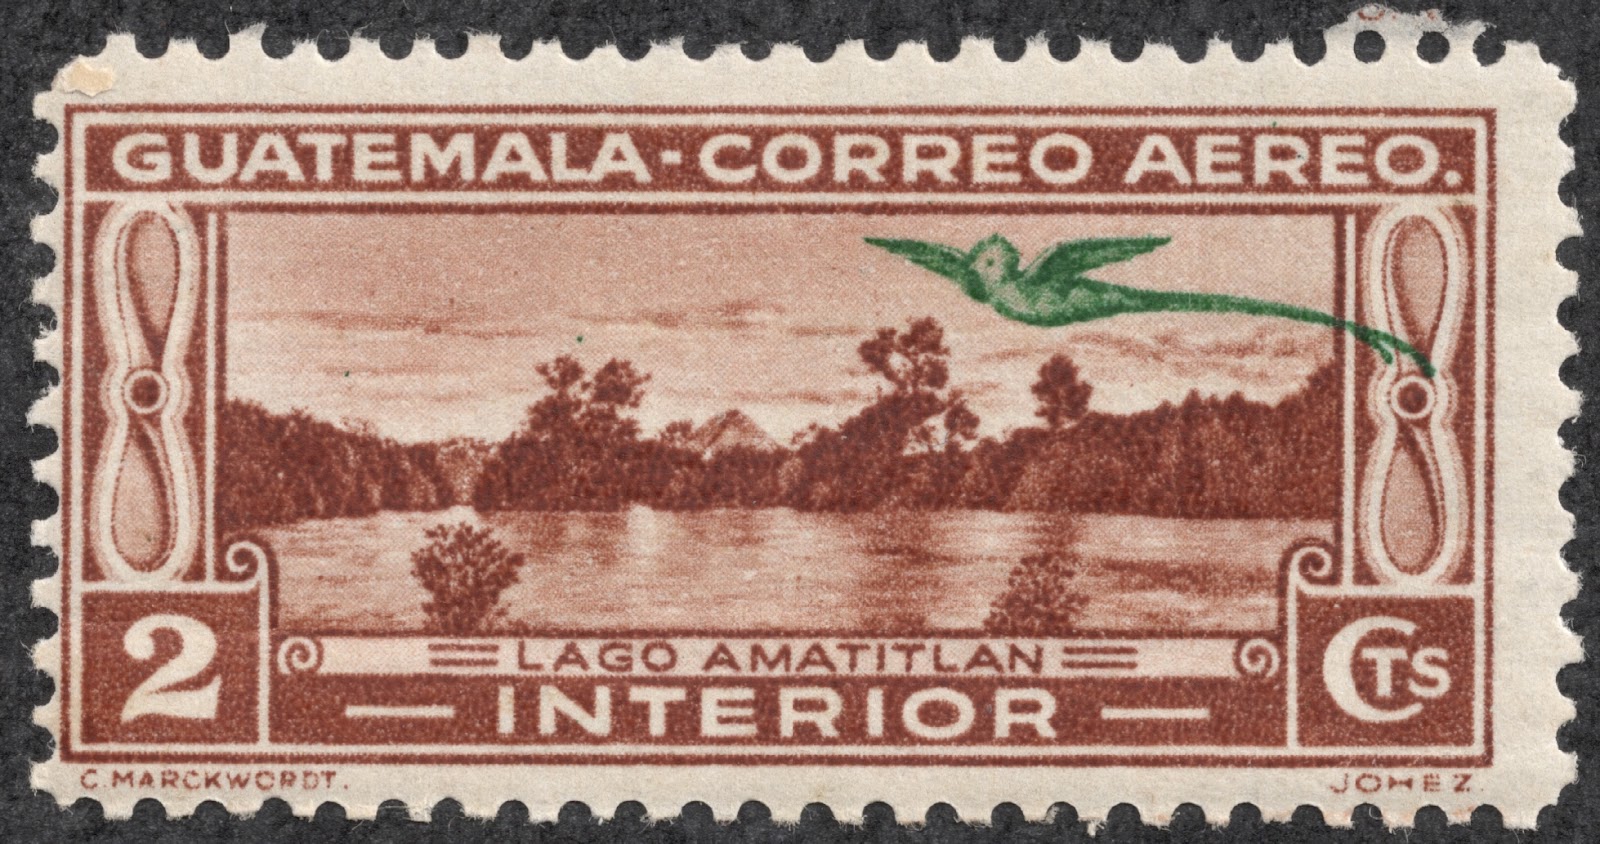 Дам гватемалу и два барбадоса. Почтовые марки Гватемалы. Марка Гватемала. Почтовая марка Гватемала Гватемала. Марки Гватемалы и Барбадоса почтовые.